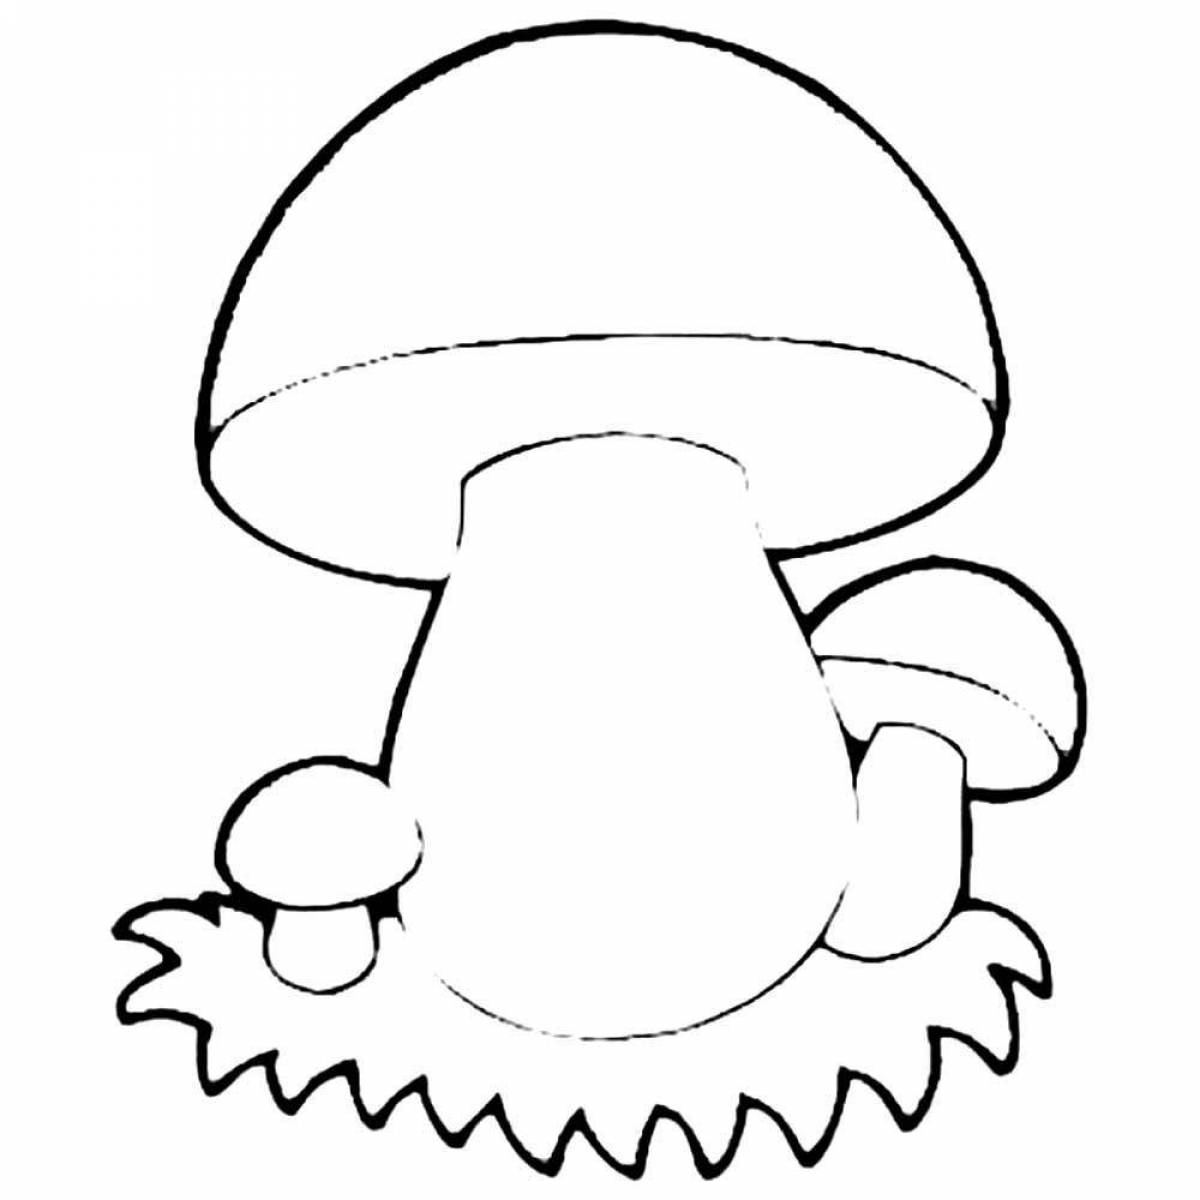 Cheerful porcini mushroom coloring book